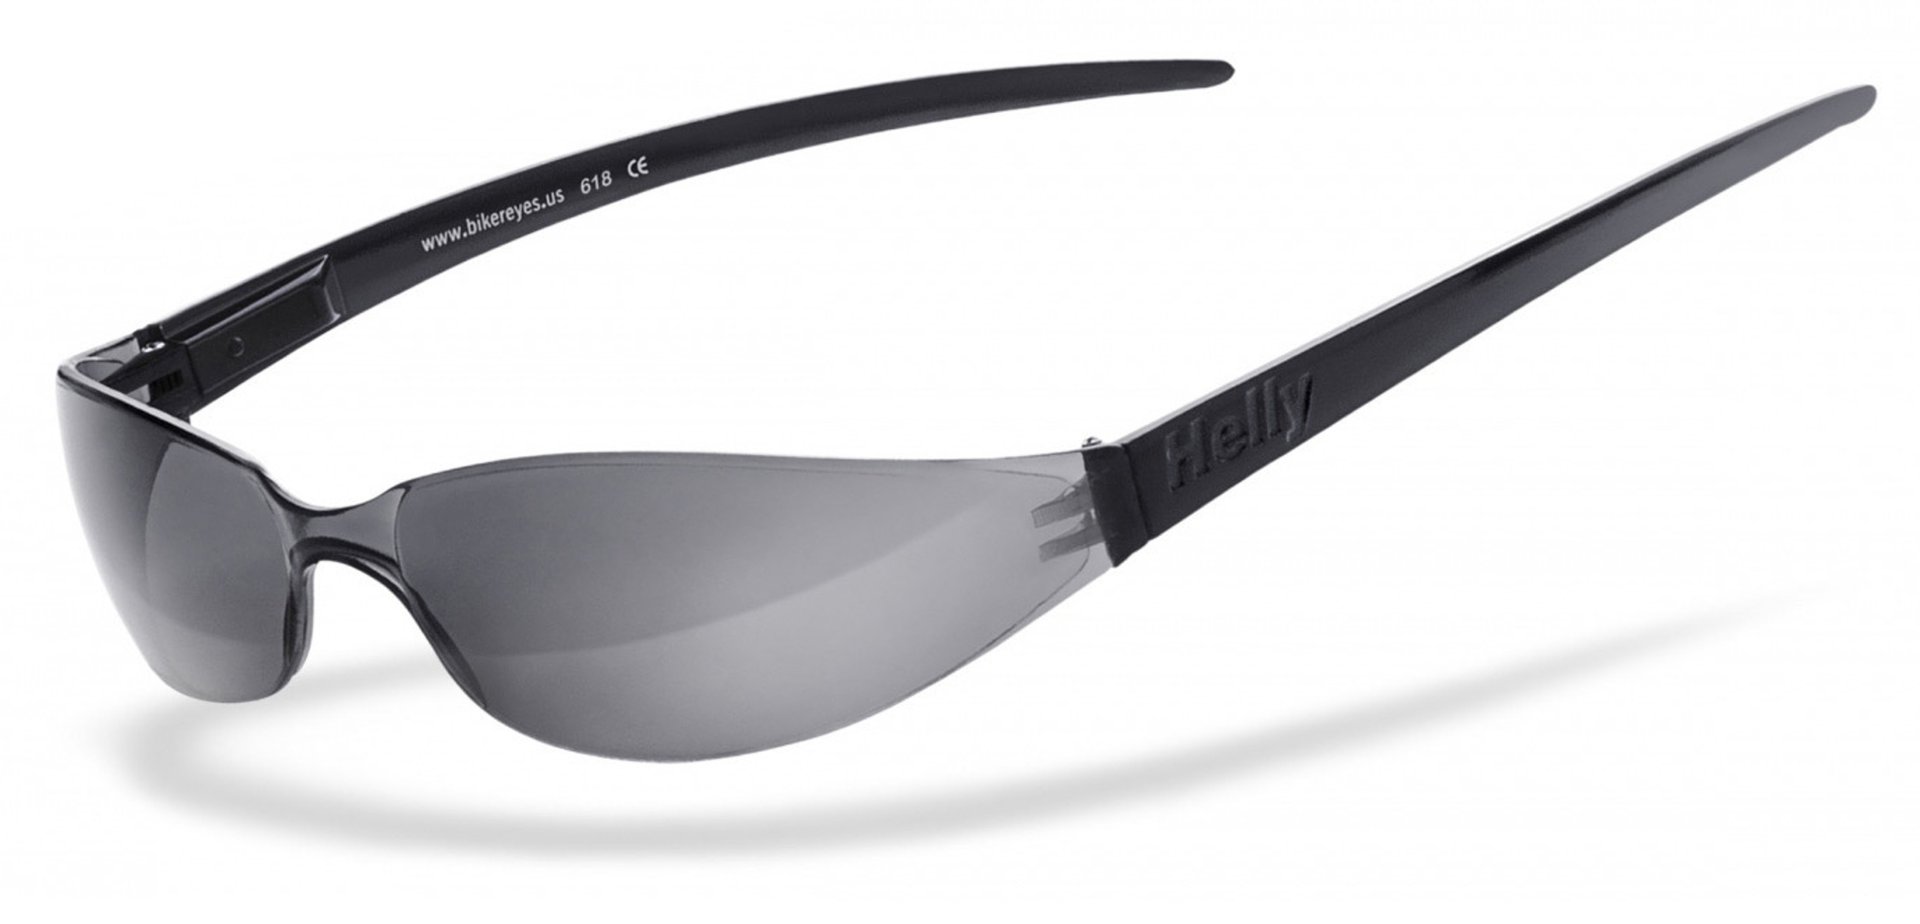 солнцезащитные очки 100% синий мультиколор Очки Helly Bikereyes Freeway 3.1 солнцезащитные, бледно синий